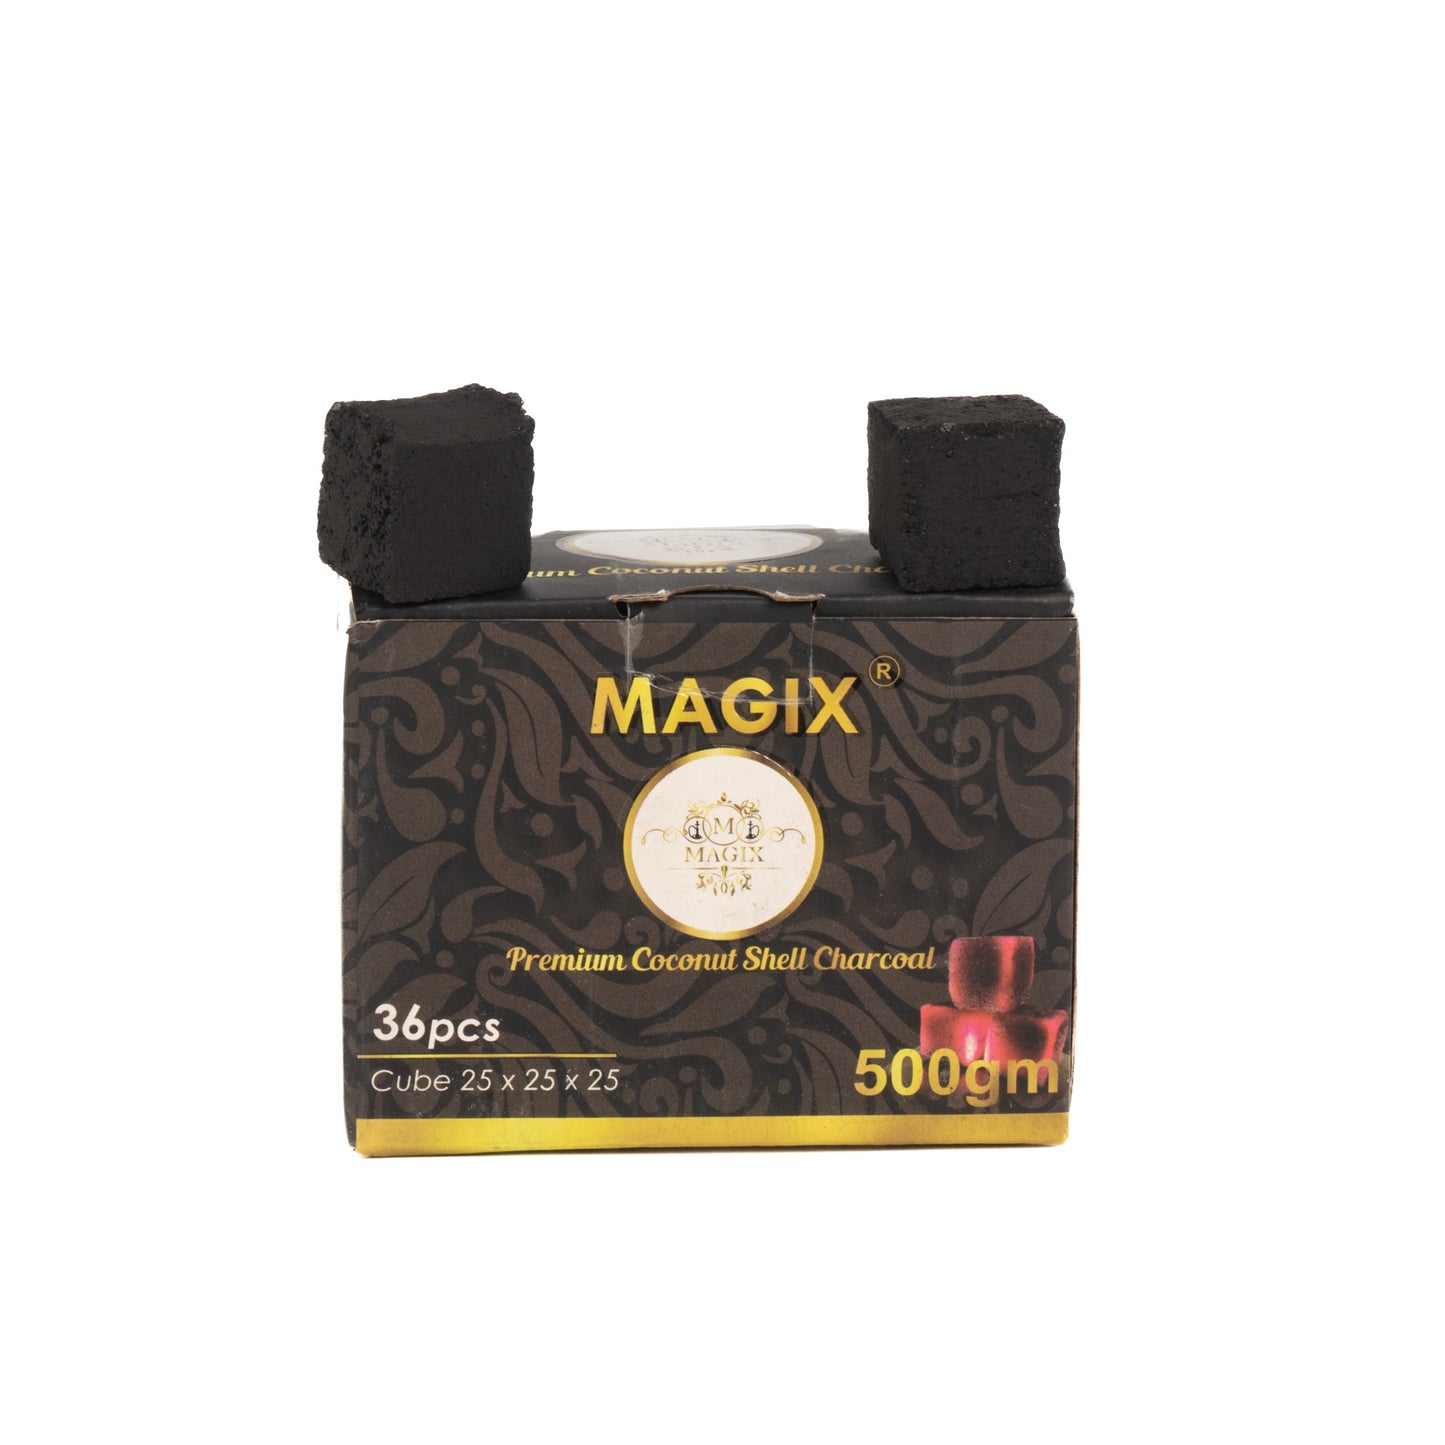 Magix Coconut Coal for Hookah 500g Pack - 36pcs